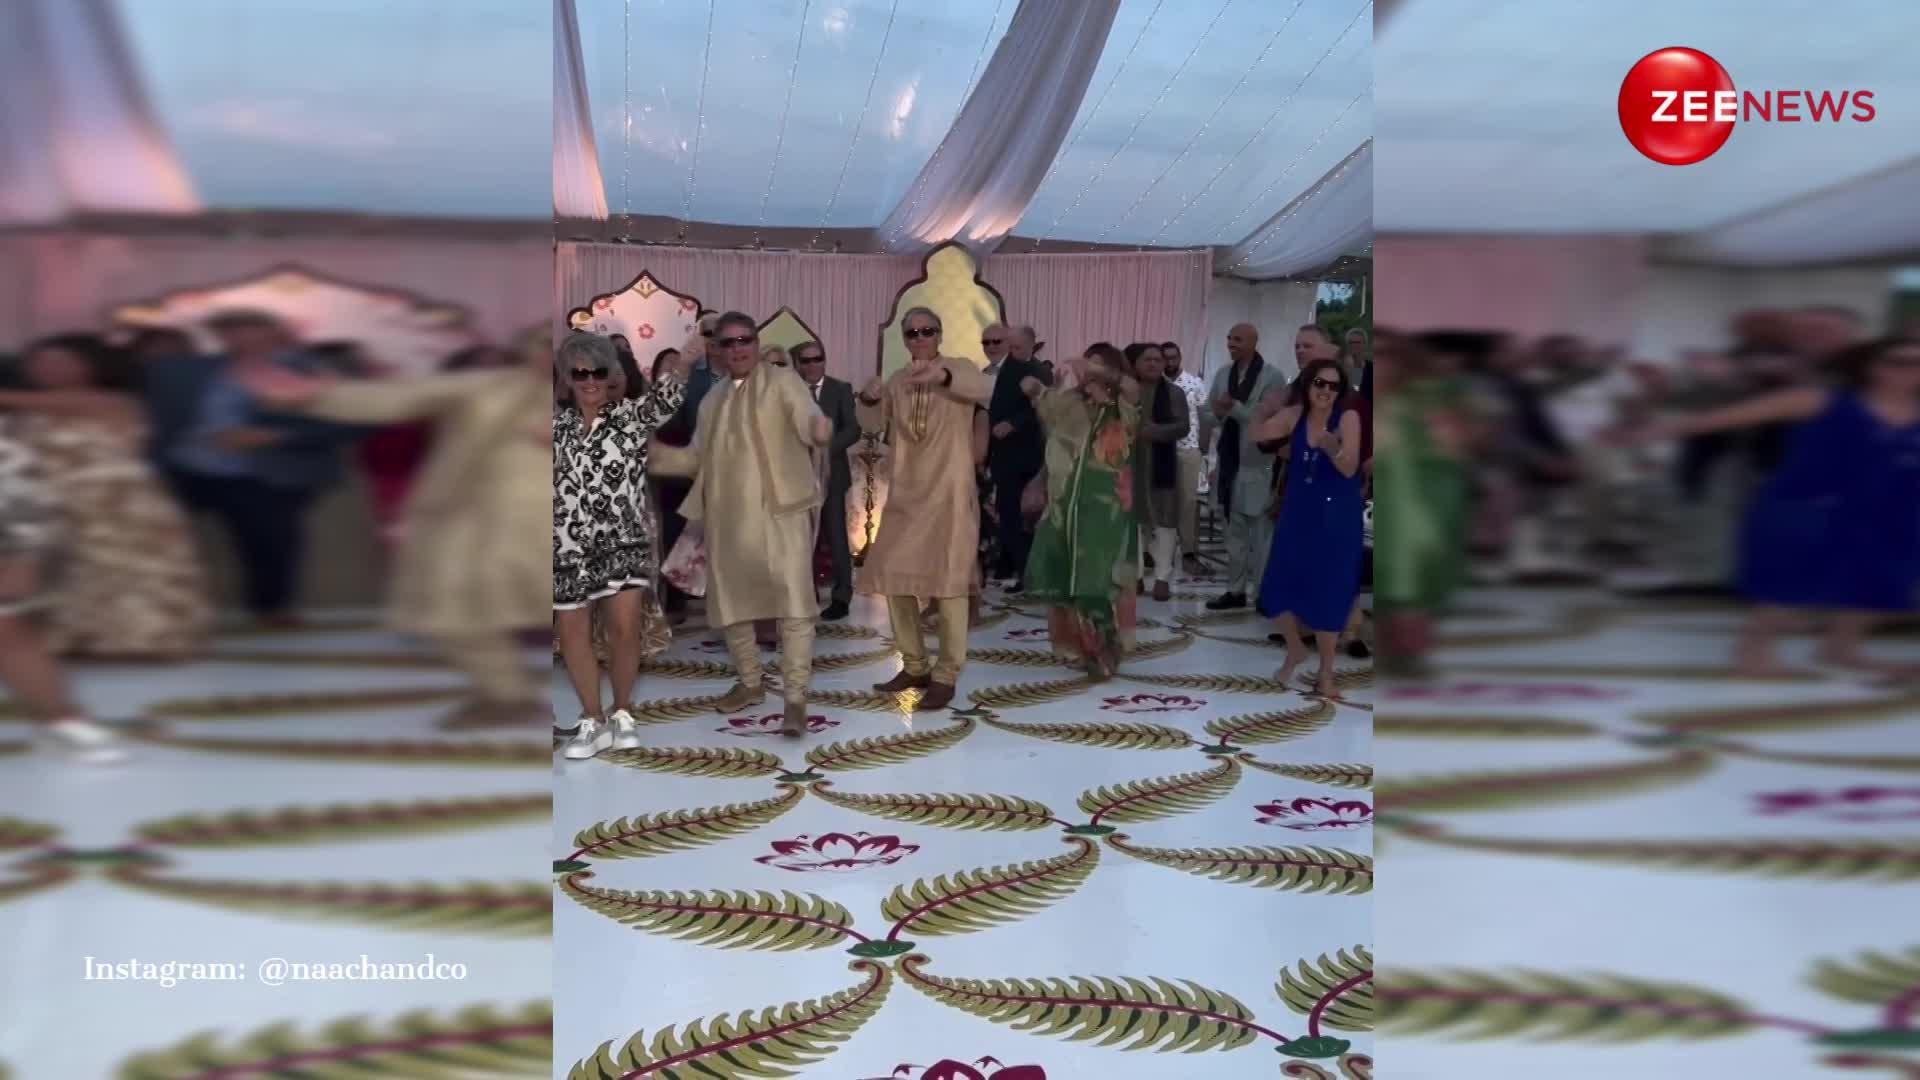 इटेलियन दूल्हे की फैमिली ने भारतीय शादी में जमाया रंग, 'काला चश्मा' पर झूमे अंग्रेज; वीडियो ने काटा इंटरनेट पर बवाल